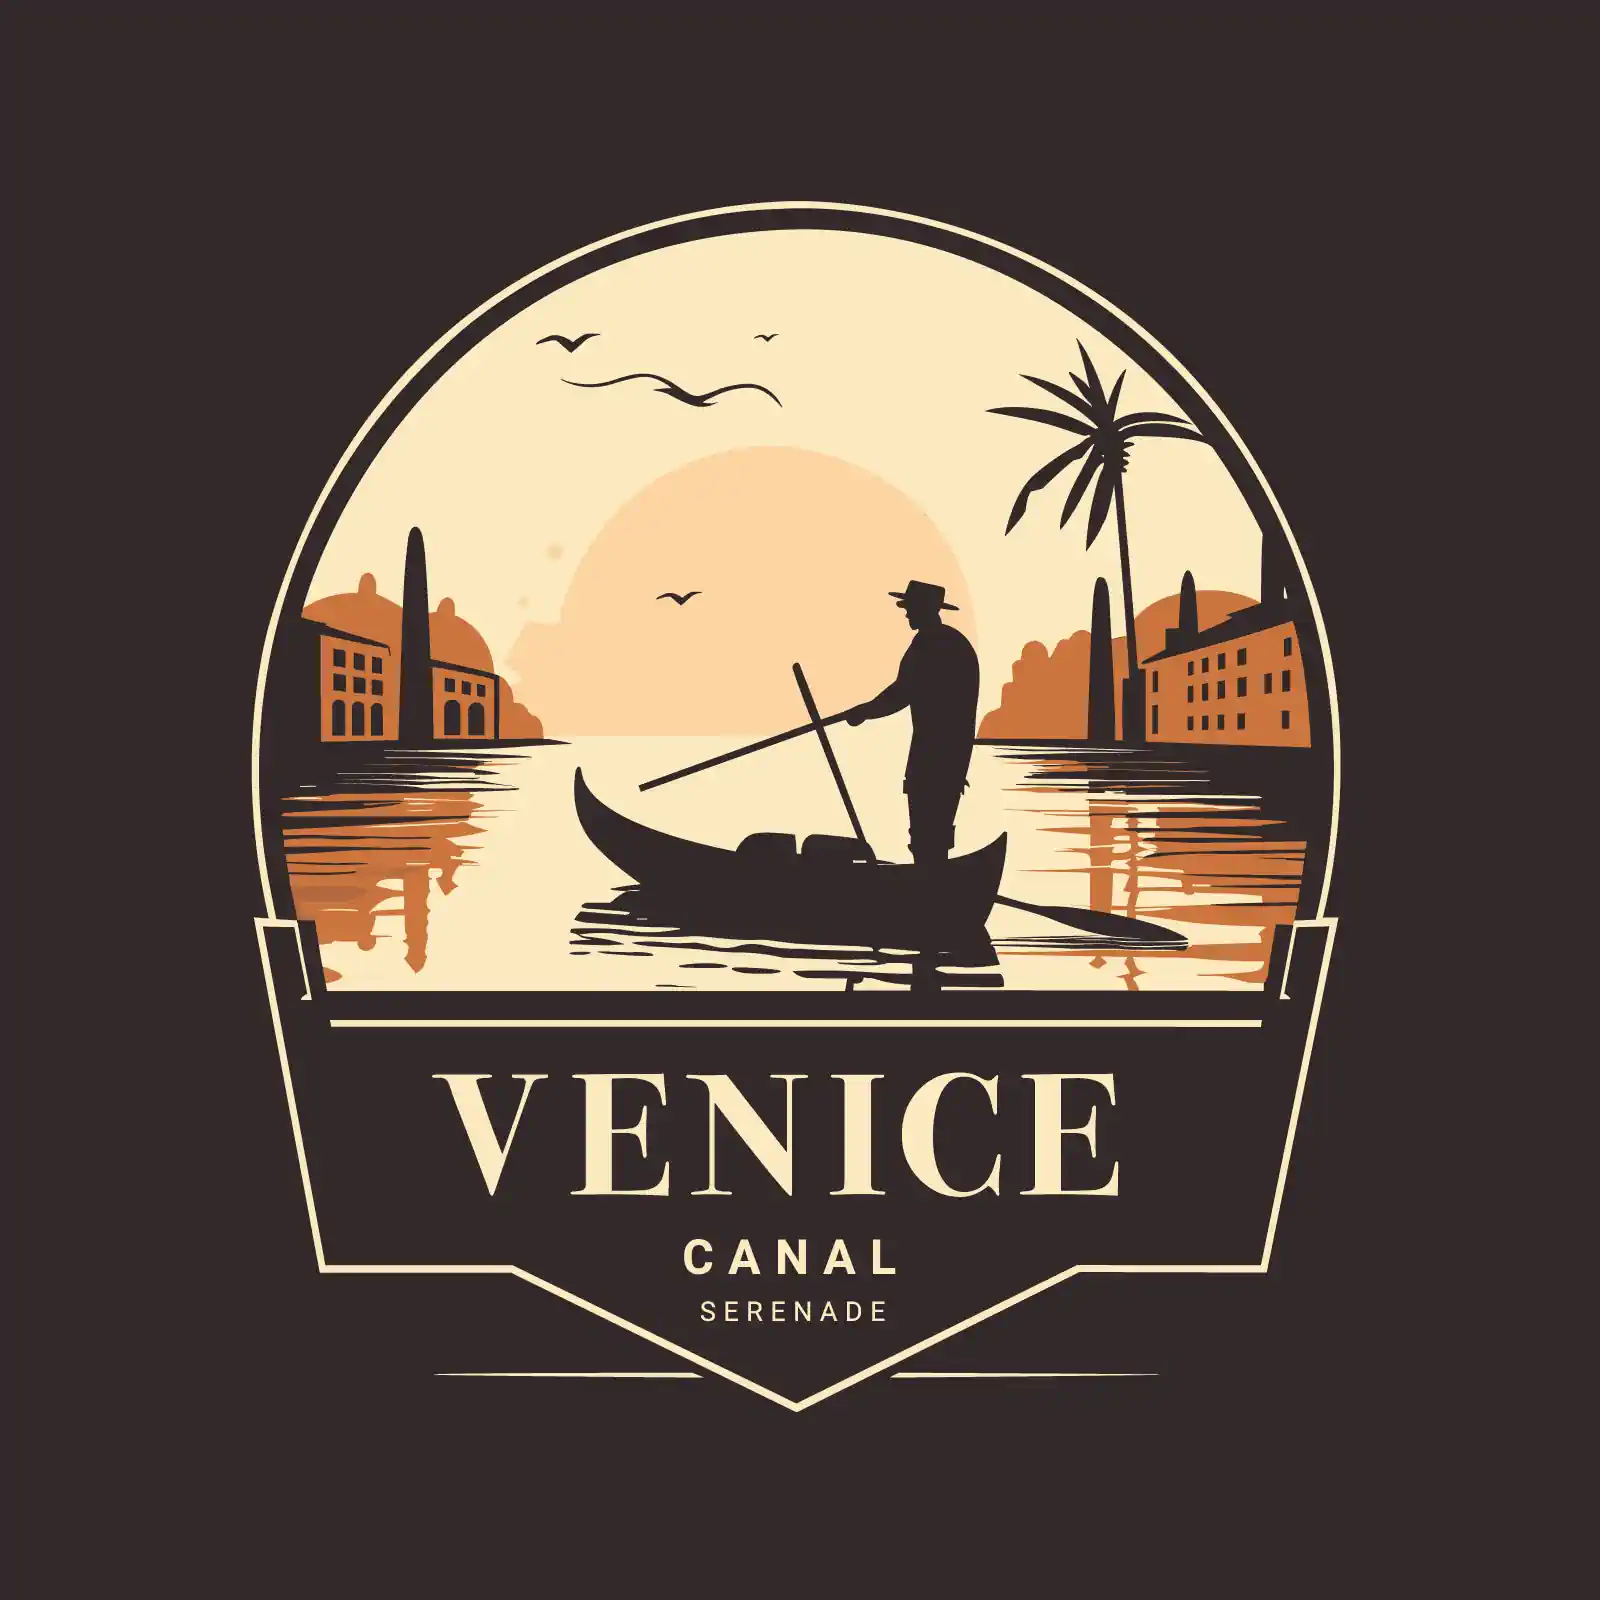 Venice canal serenade logo